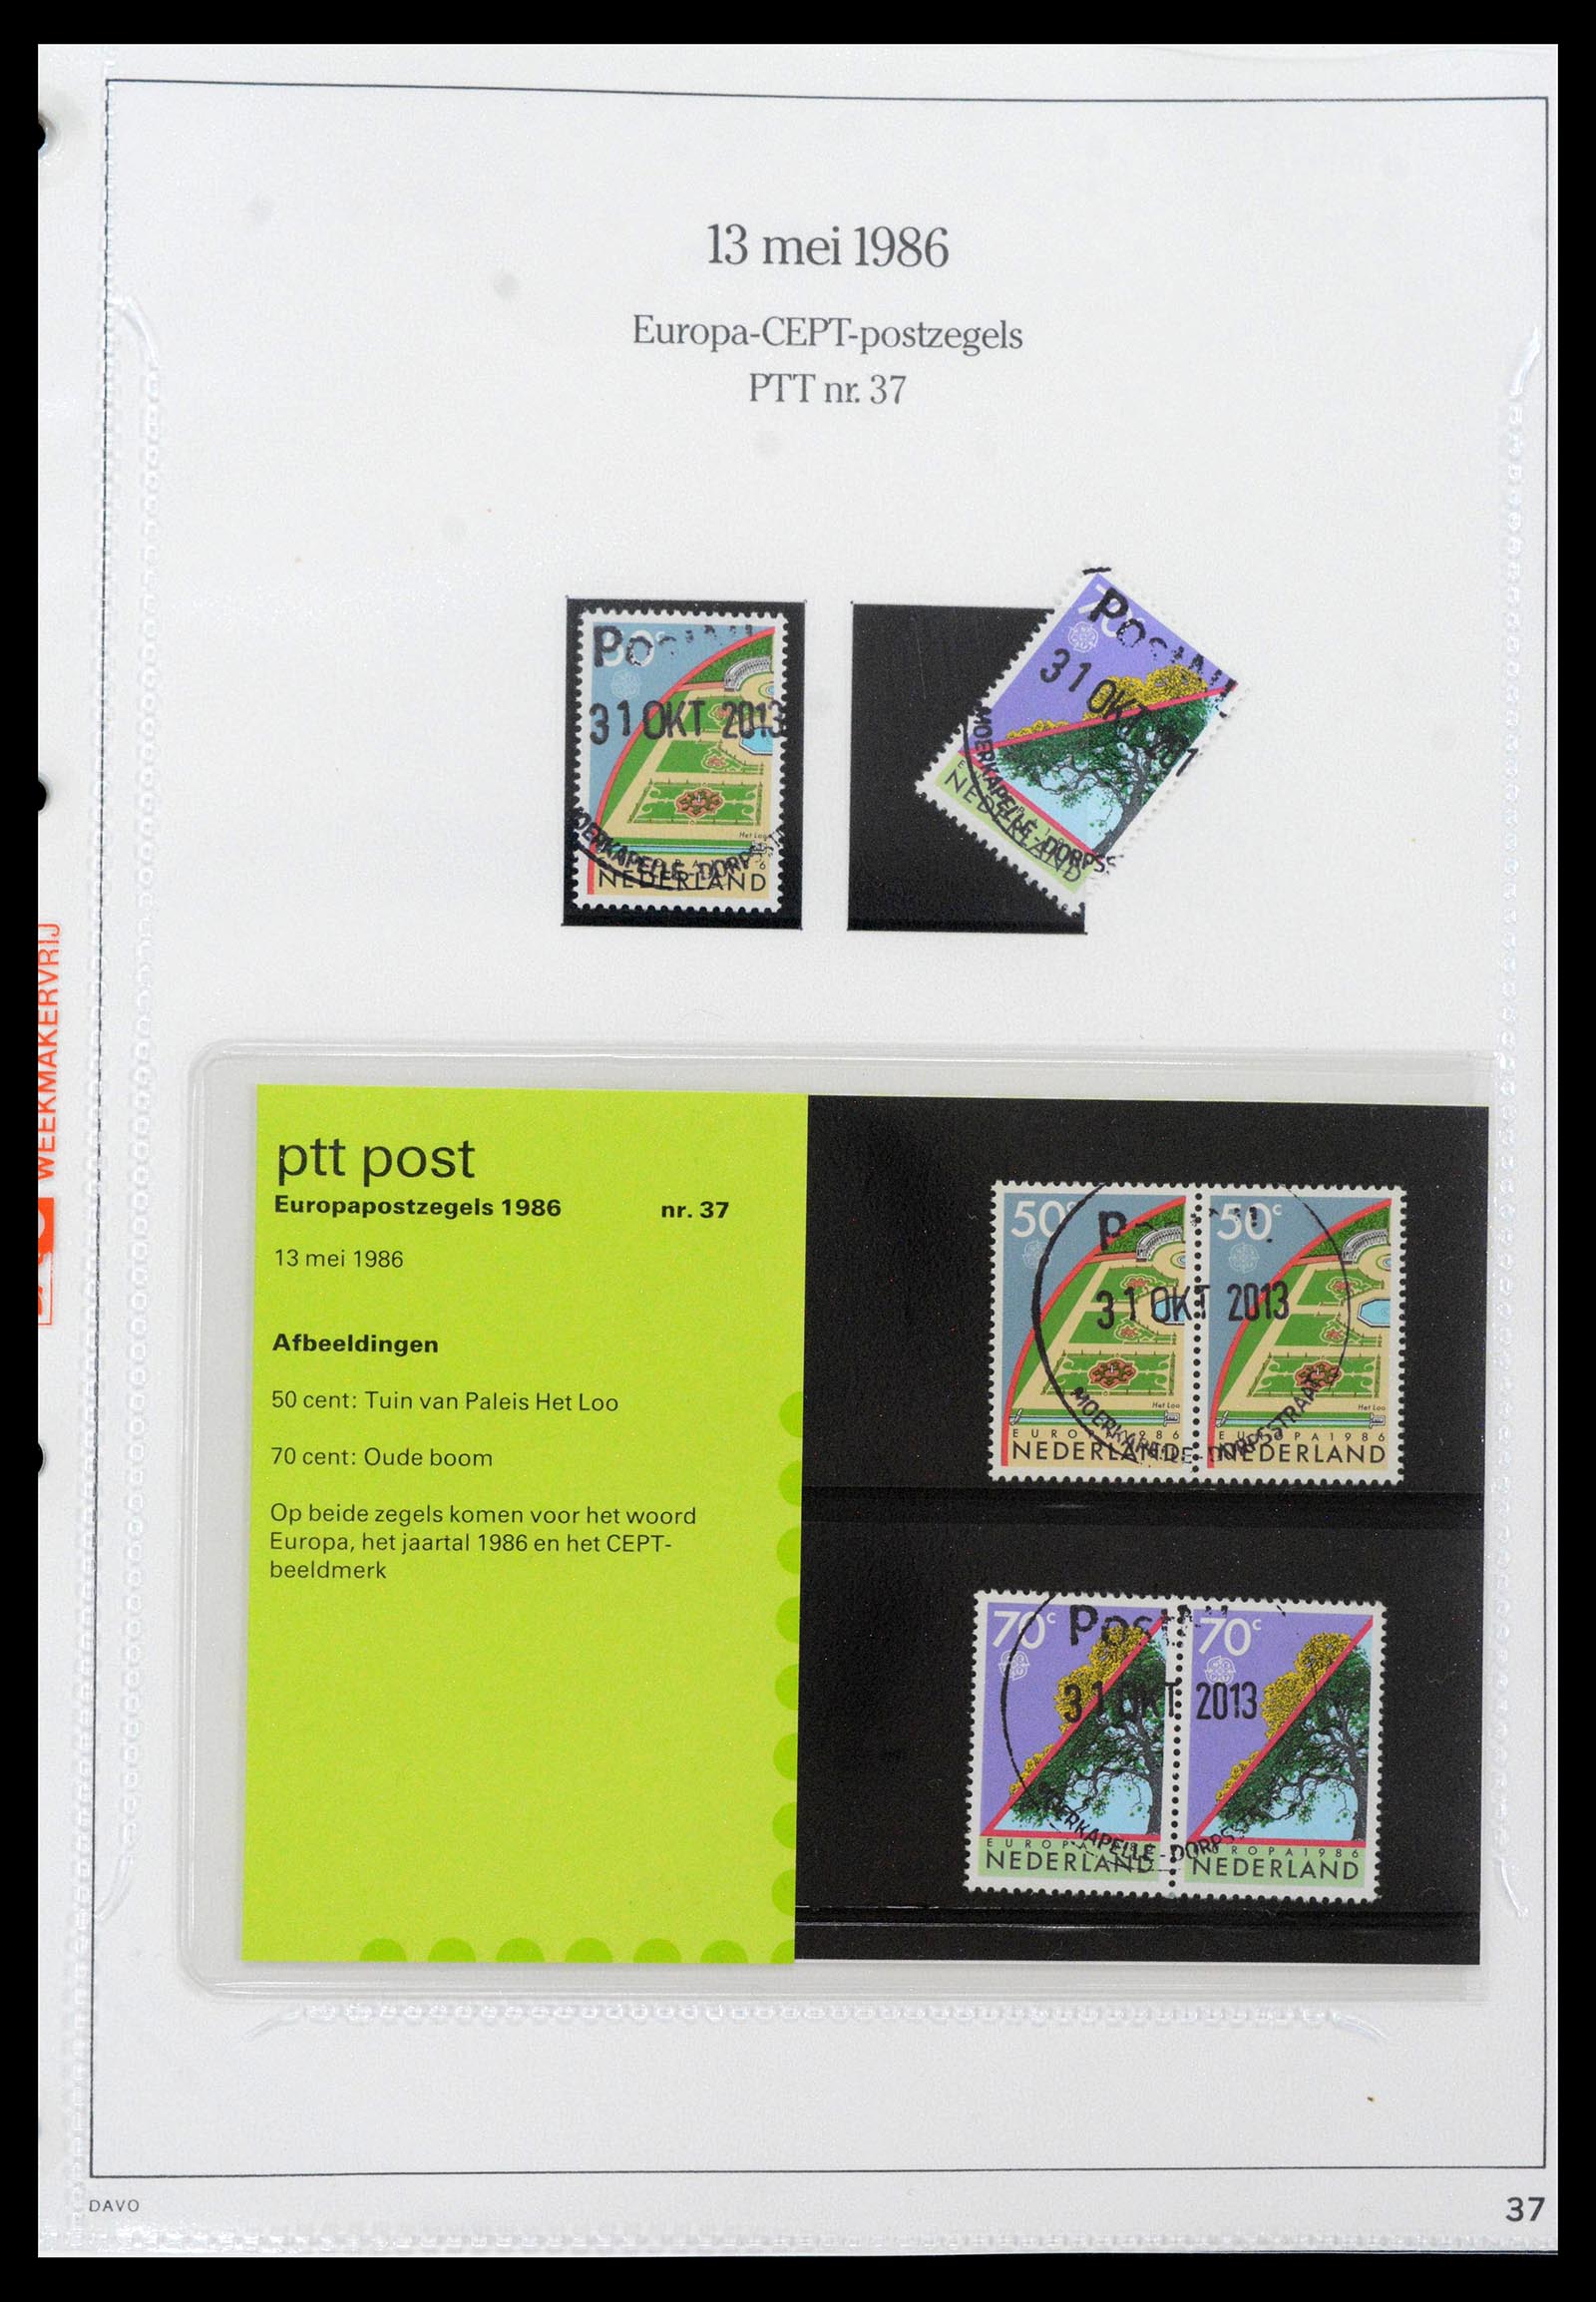 39121 0037 - Stamp collection 39121 Netherlands presentationpacks 1982-2001.